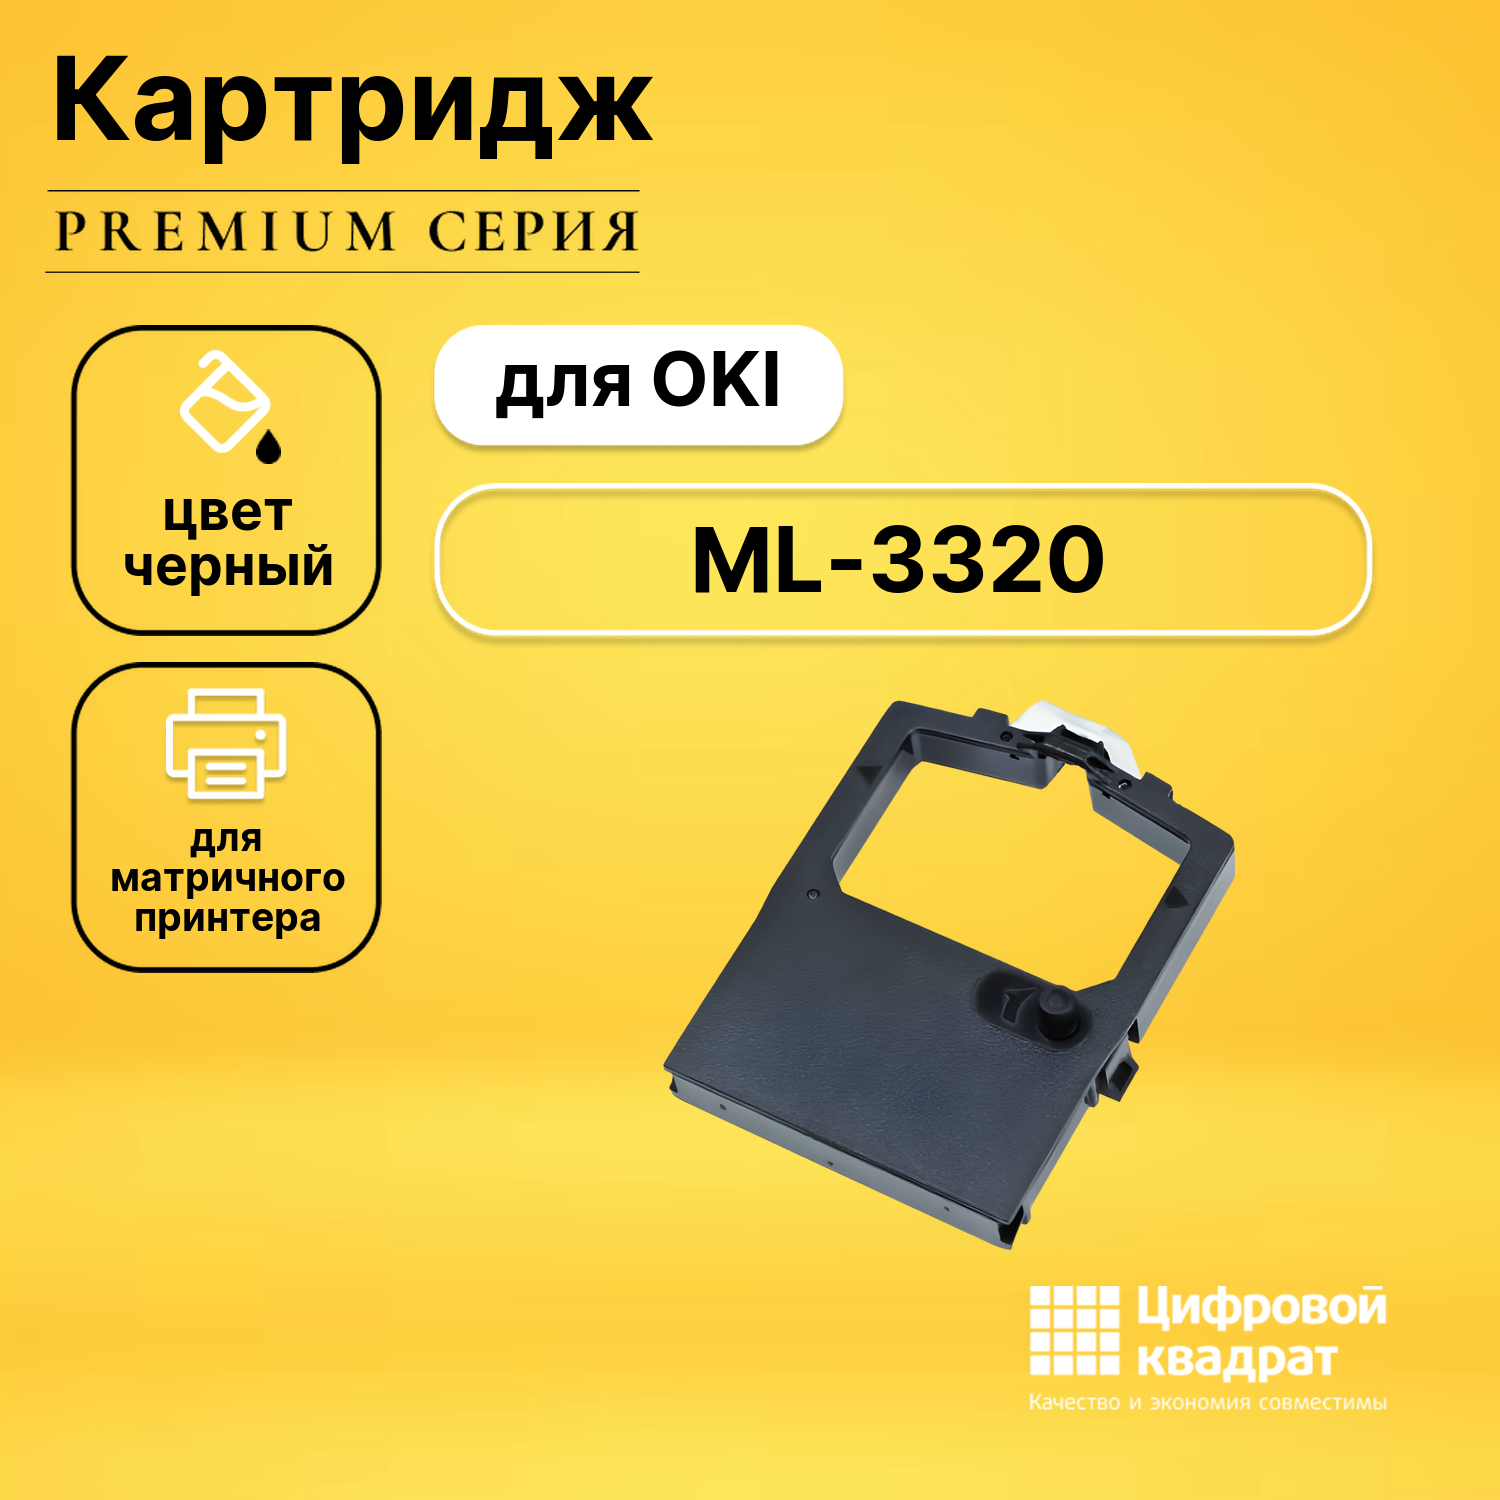 Риббон-картридж DS для OKI ML-3320 совместимый